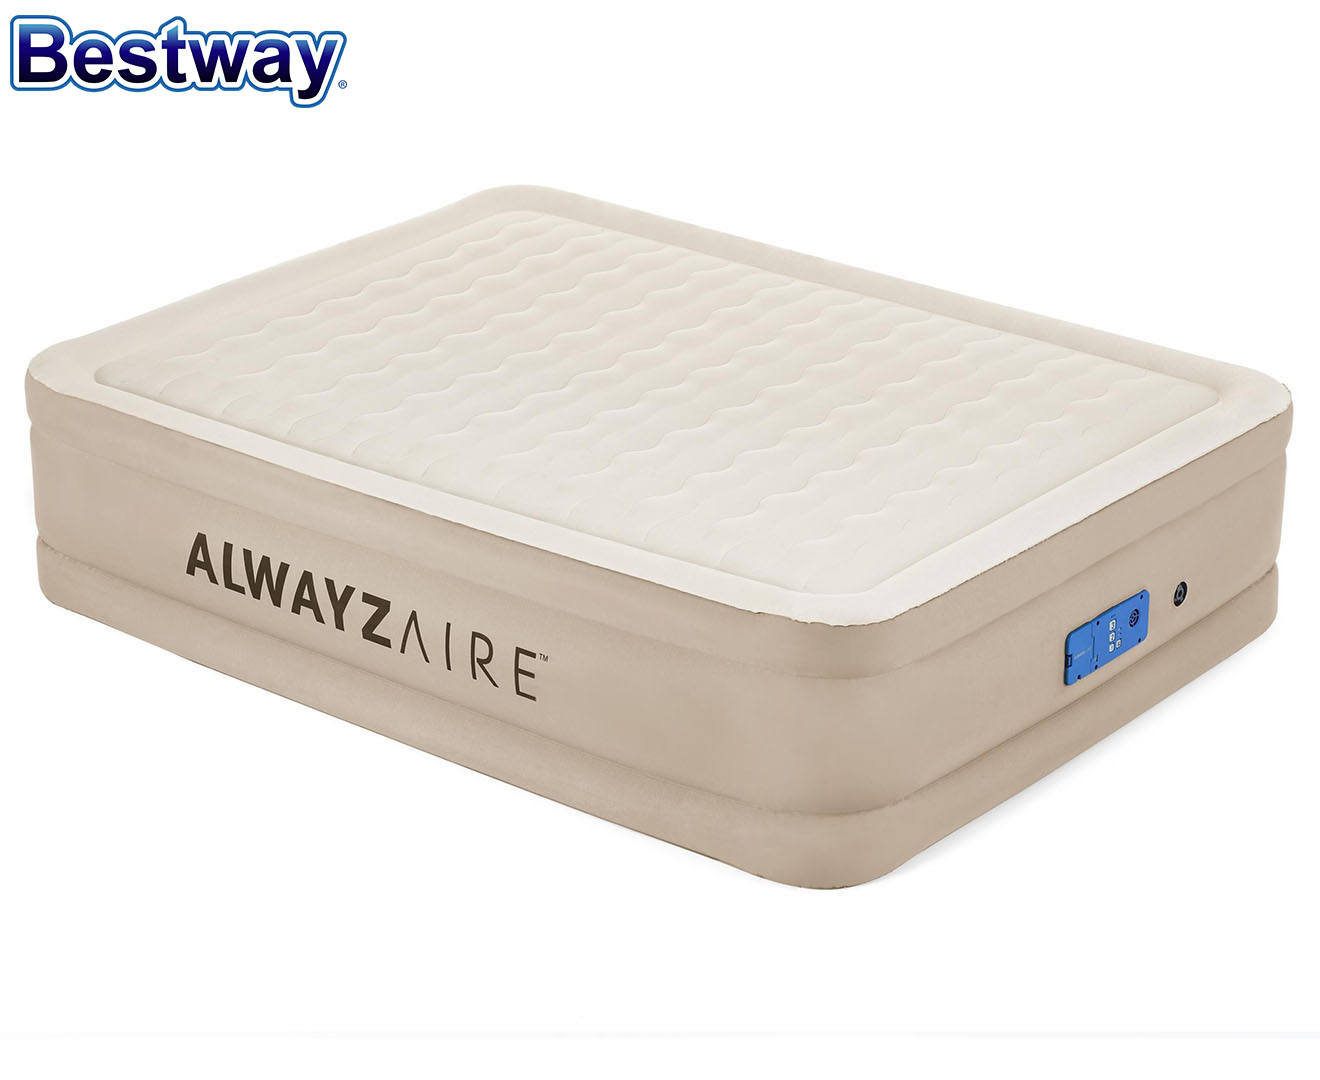 Bestway Queen AlwayzAire Fortech Air Bed w/ Built-in Comfort Pump & USB Port | Www.catch.co.nz